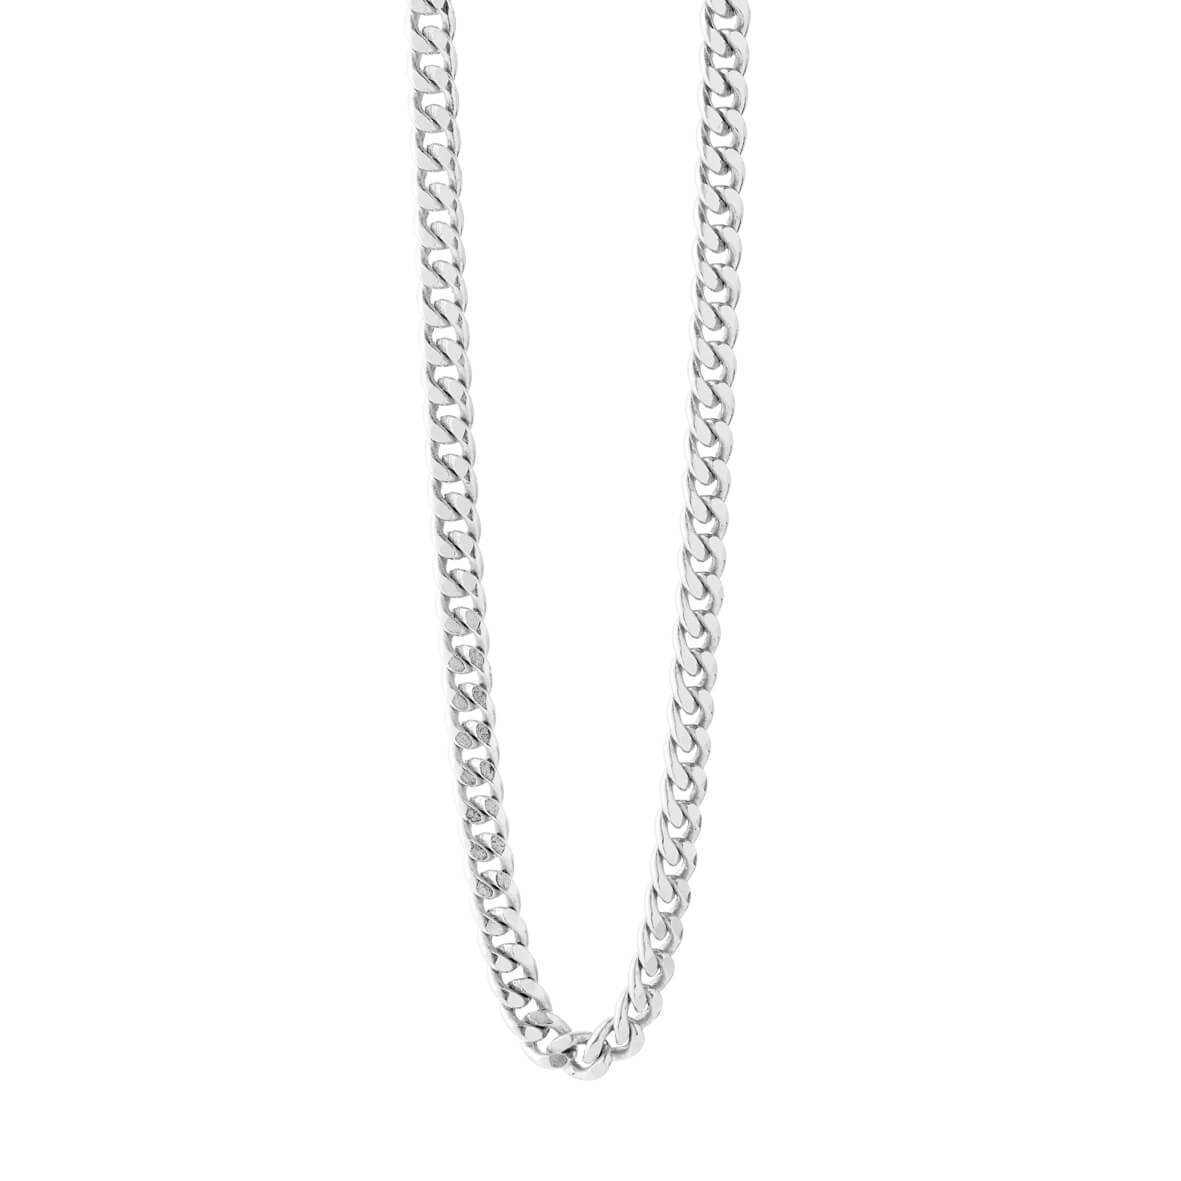 48 cm necklace in silver / 1835-1-48Susanne Friis Bjørner | Official ...